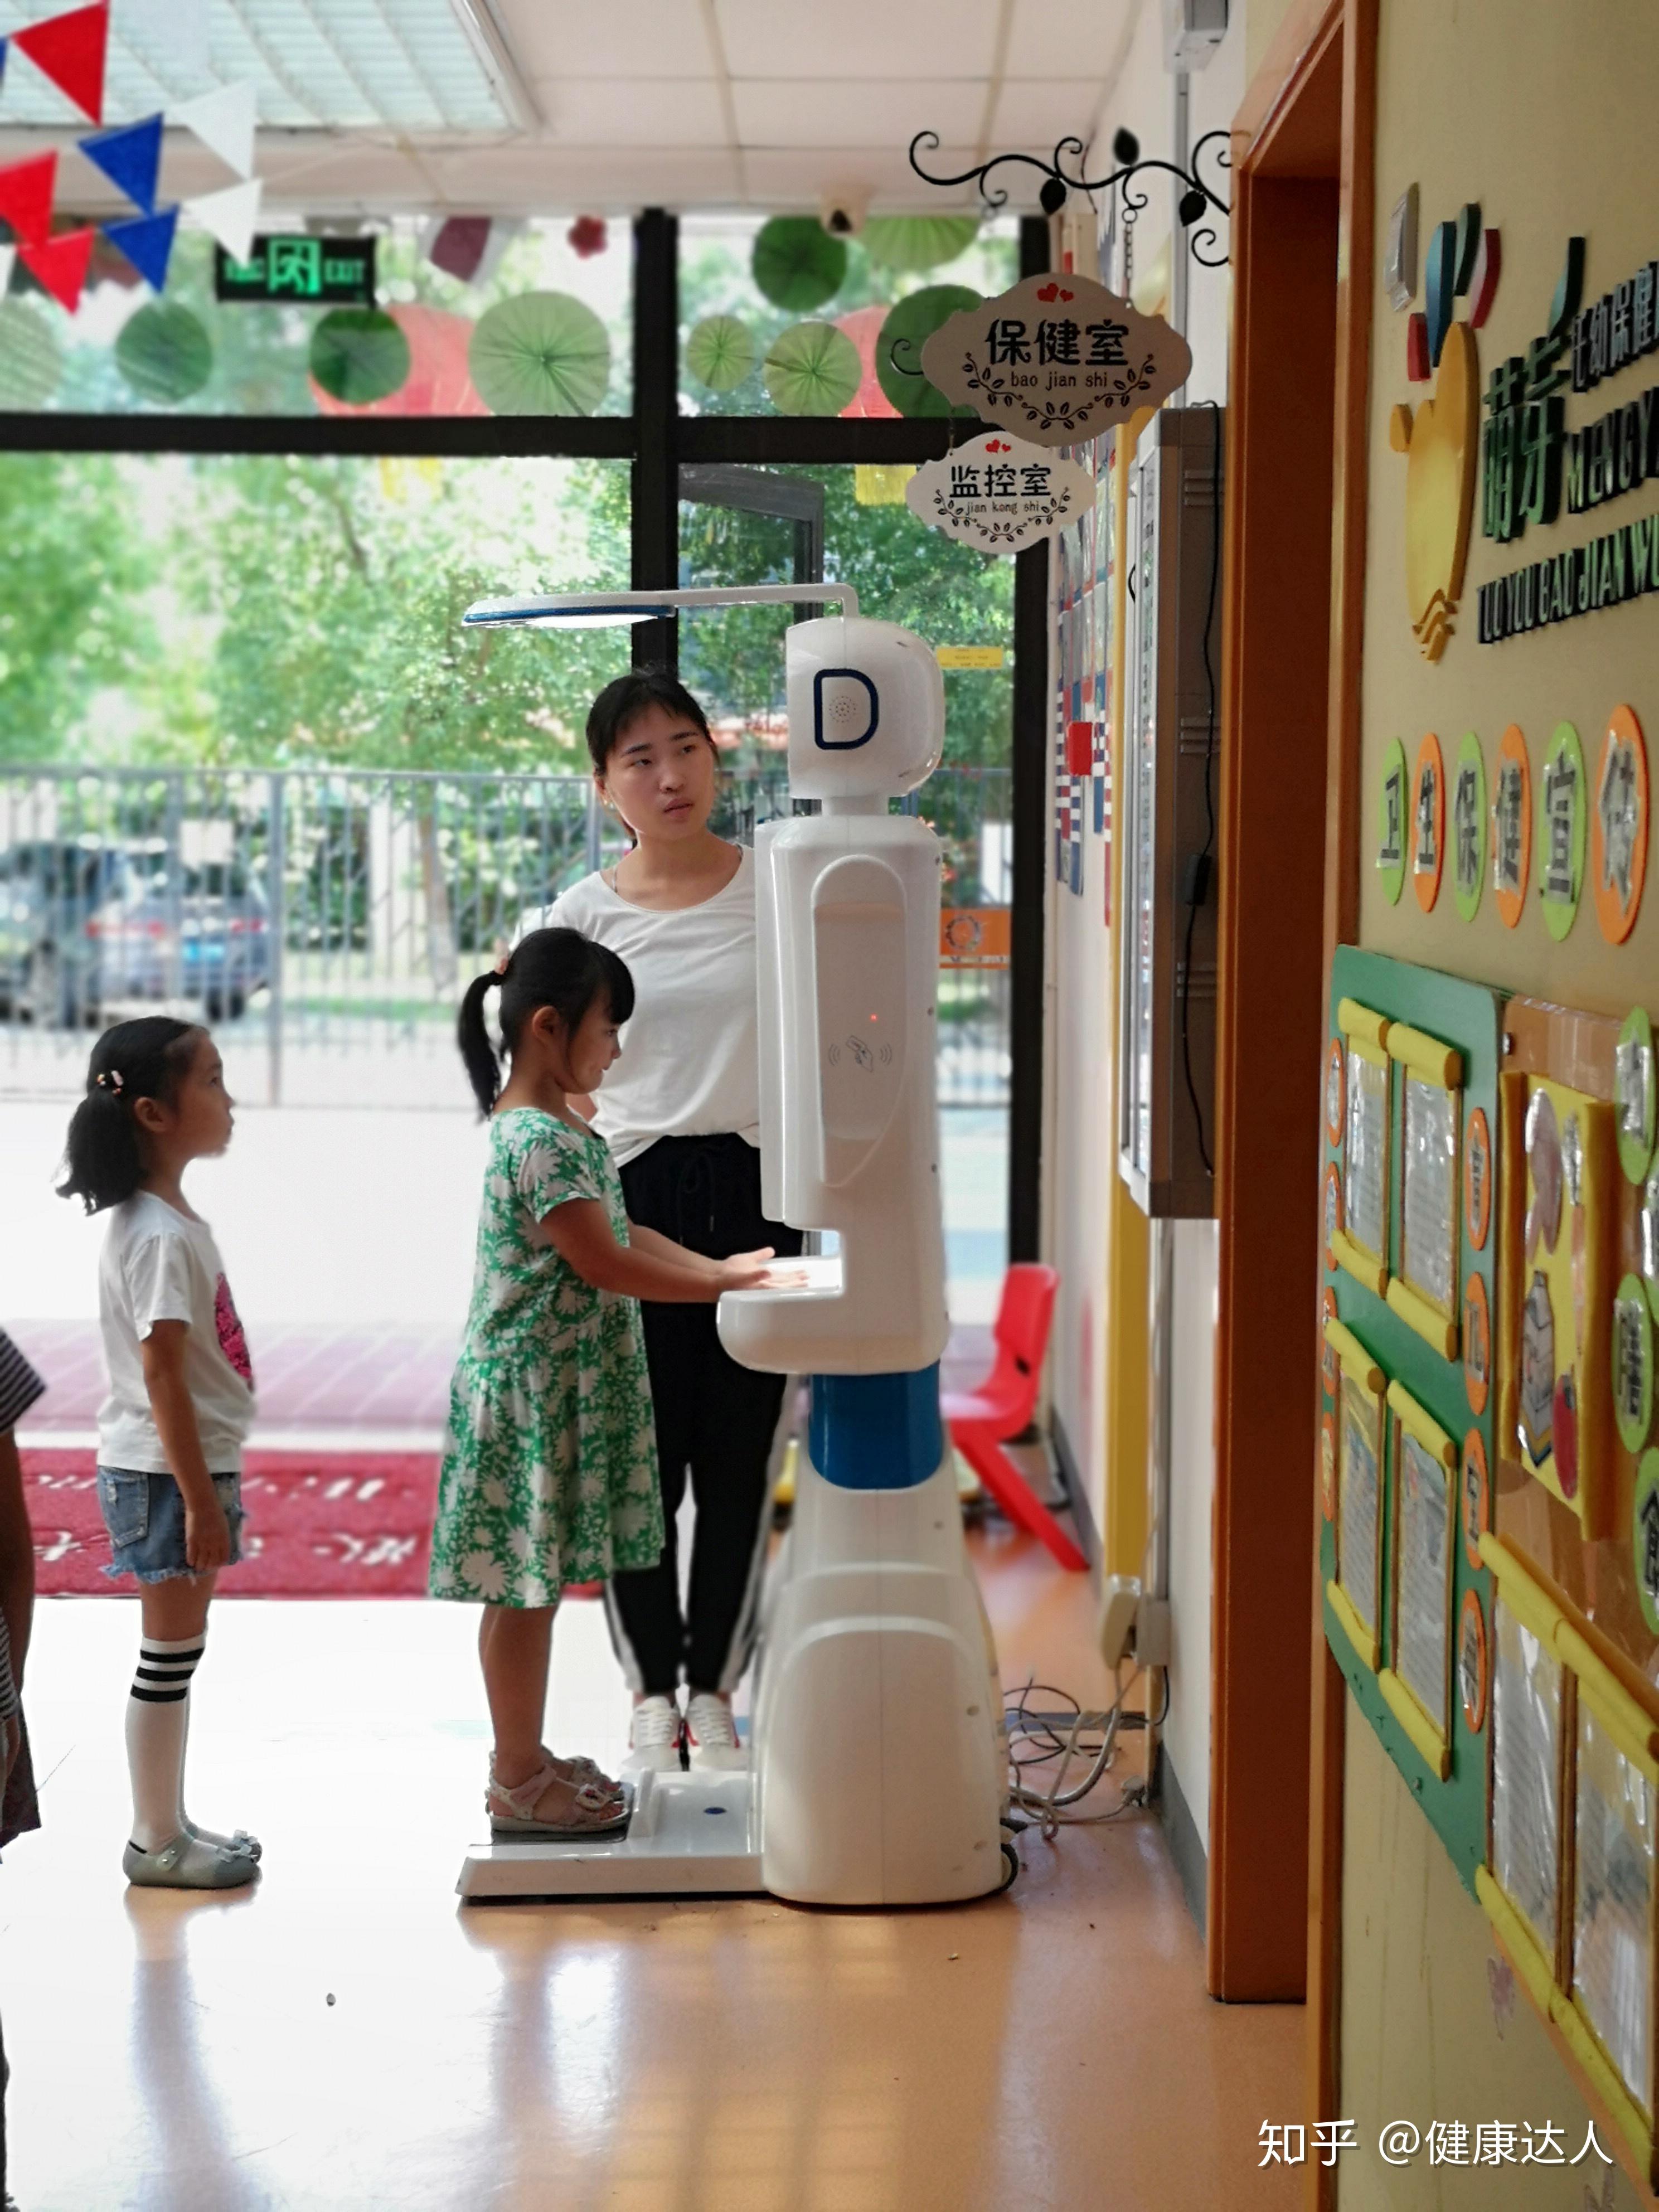 徐州市一幼儿园引进智能晨检机器人加强校园健康防护 - 哔哩哔哩